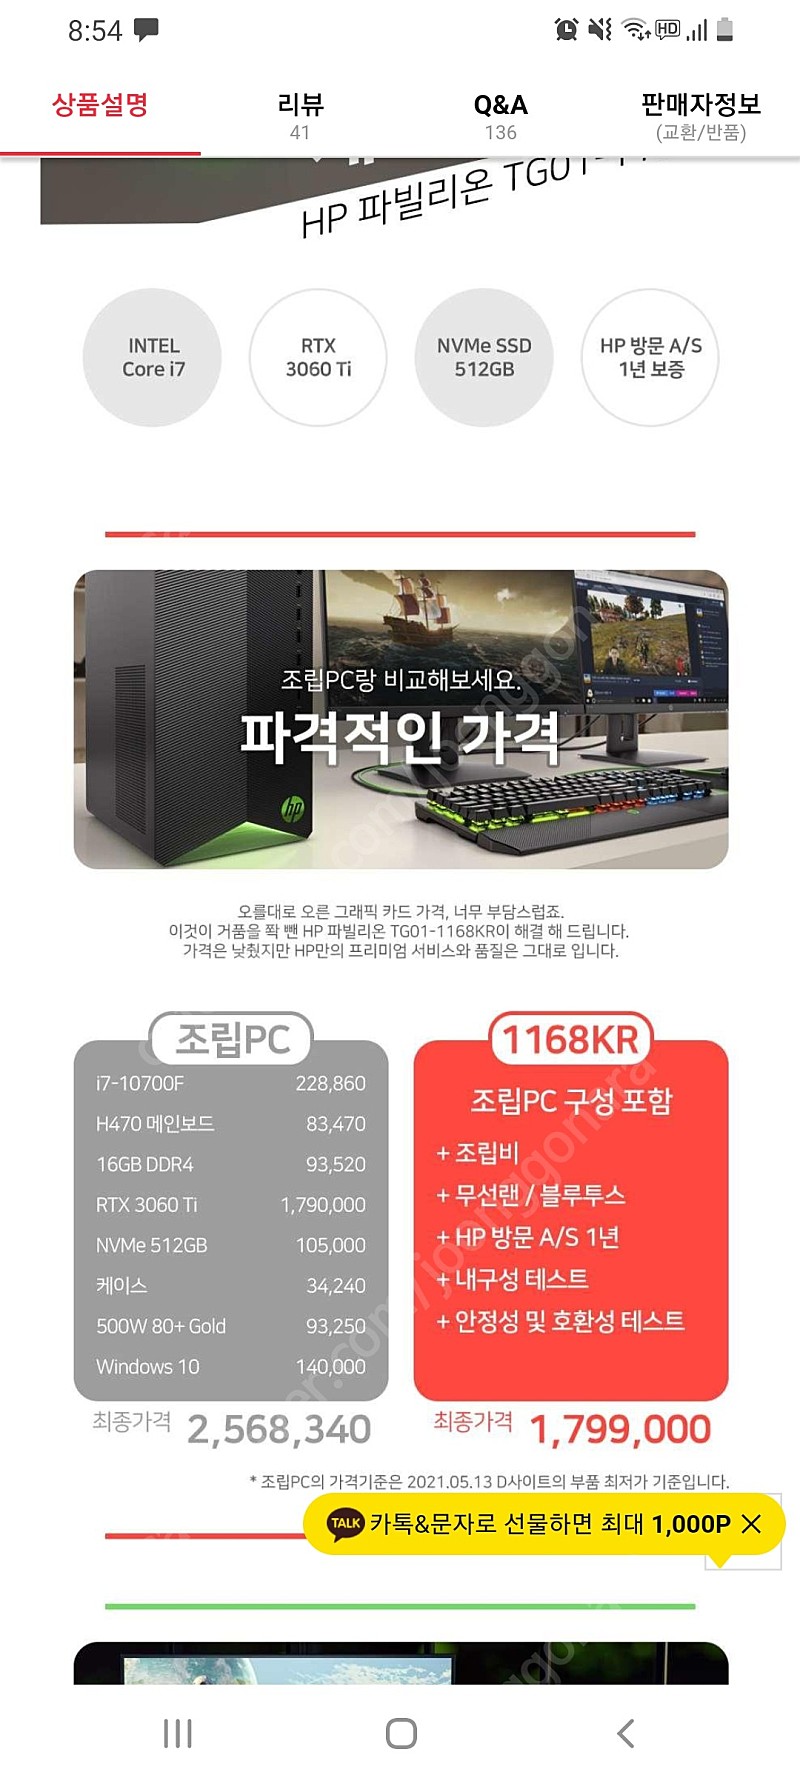 (미개봉) HP 컴퓨터, 데스크탑, 본체, i7-10700f, 16GB, 3060ti, 513GB 팝니다. 구매일자 2021년 5월 21일 입니다.